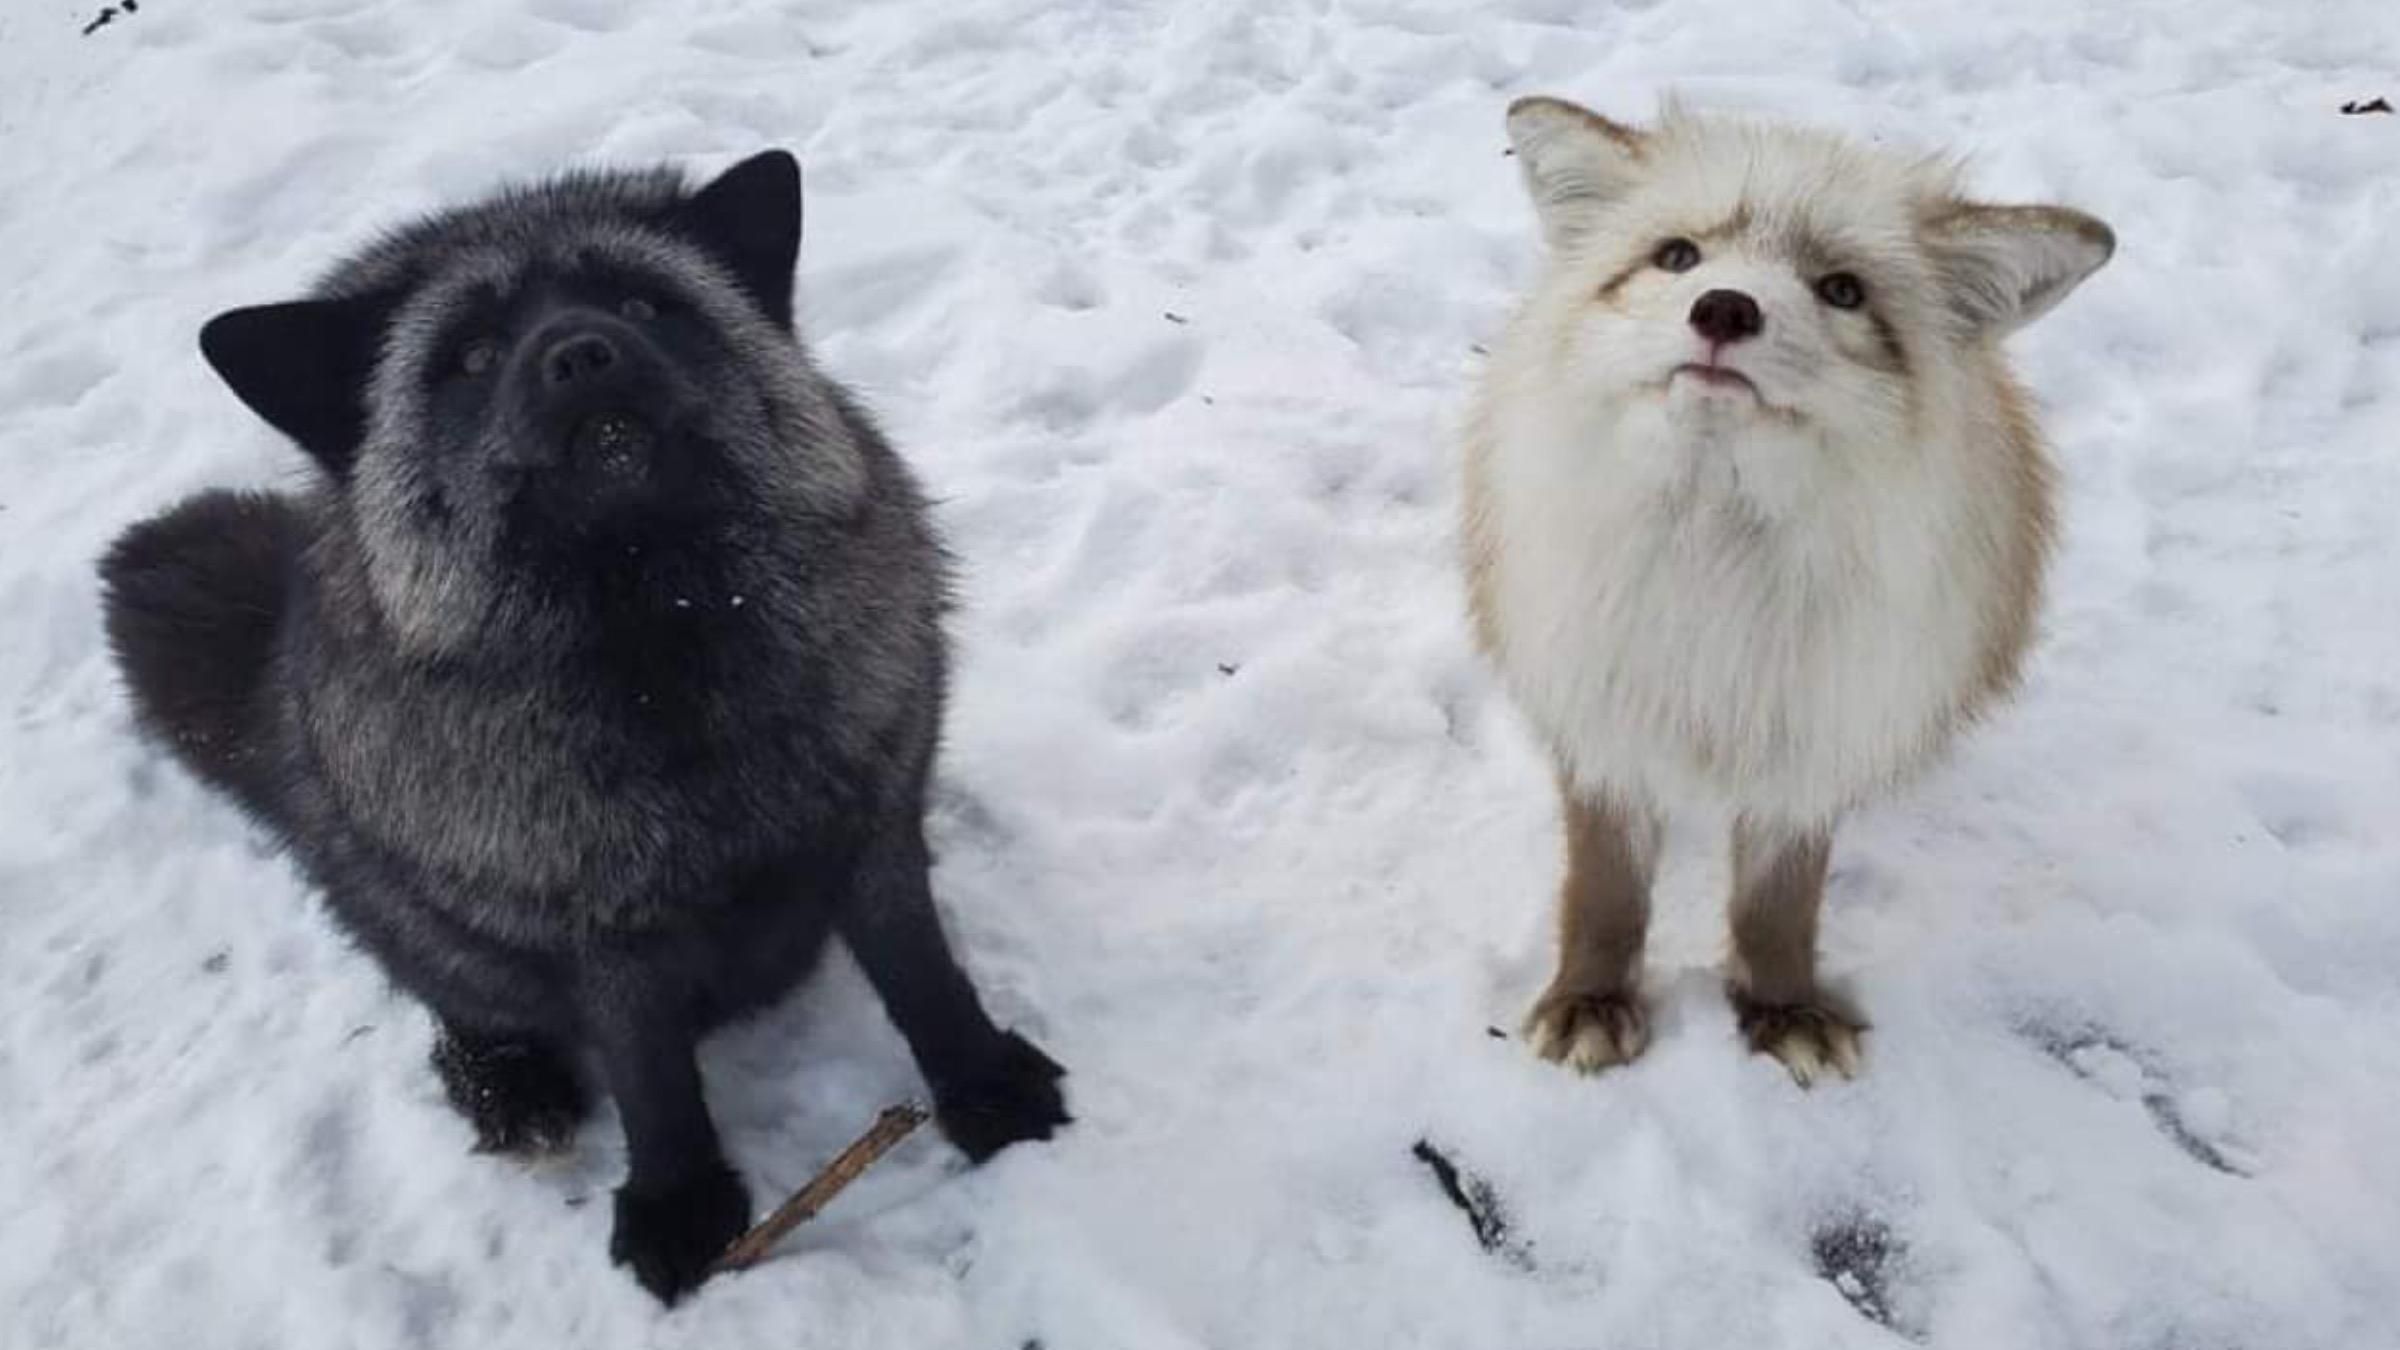 Съезжали с горки и играли: сеть покорило видео зимних развлечений лисиц - Pets